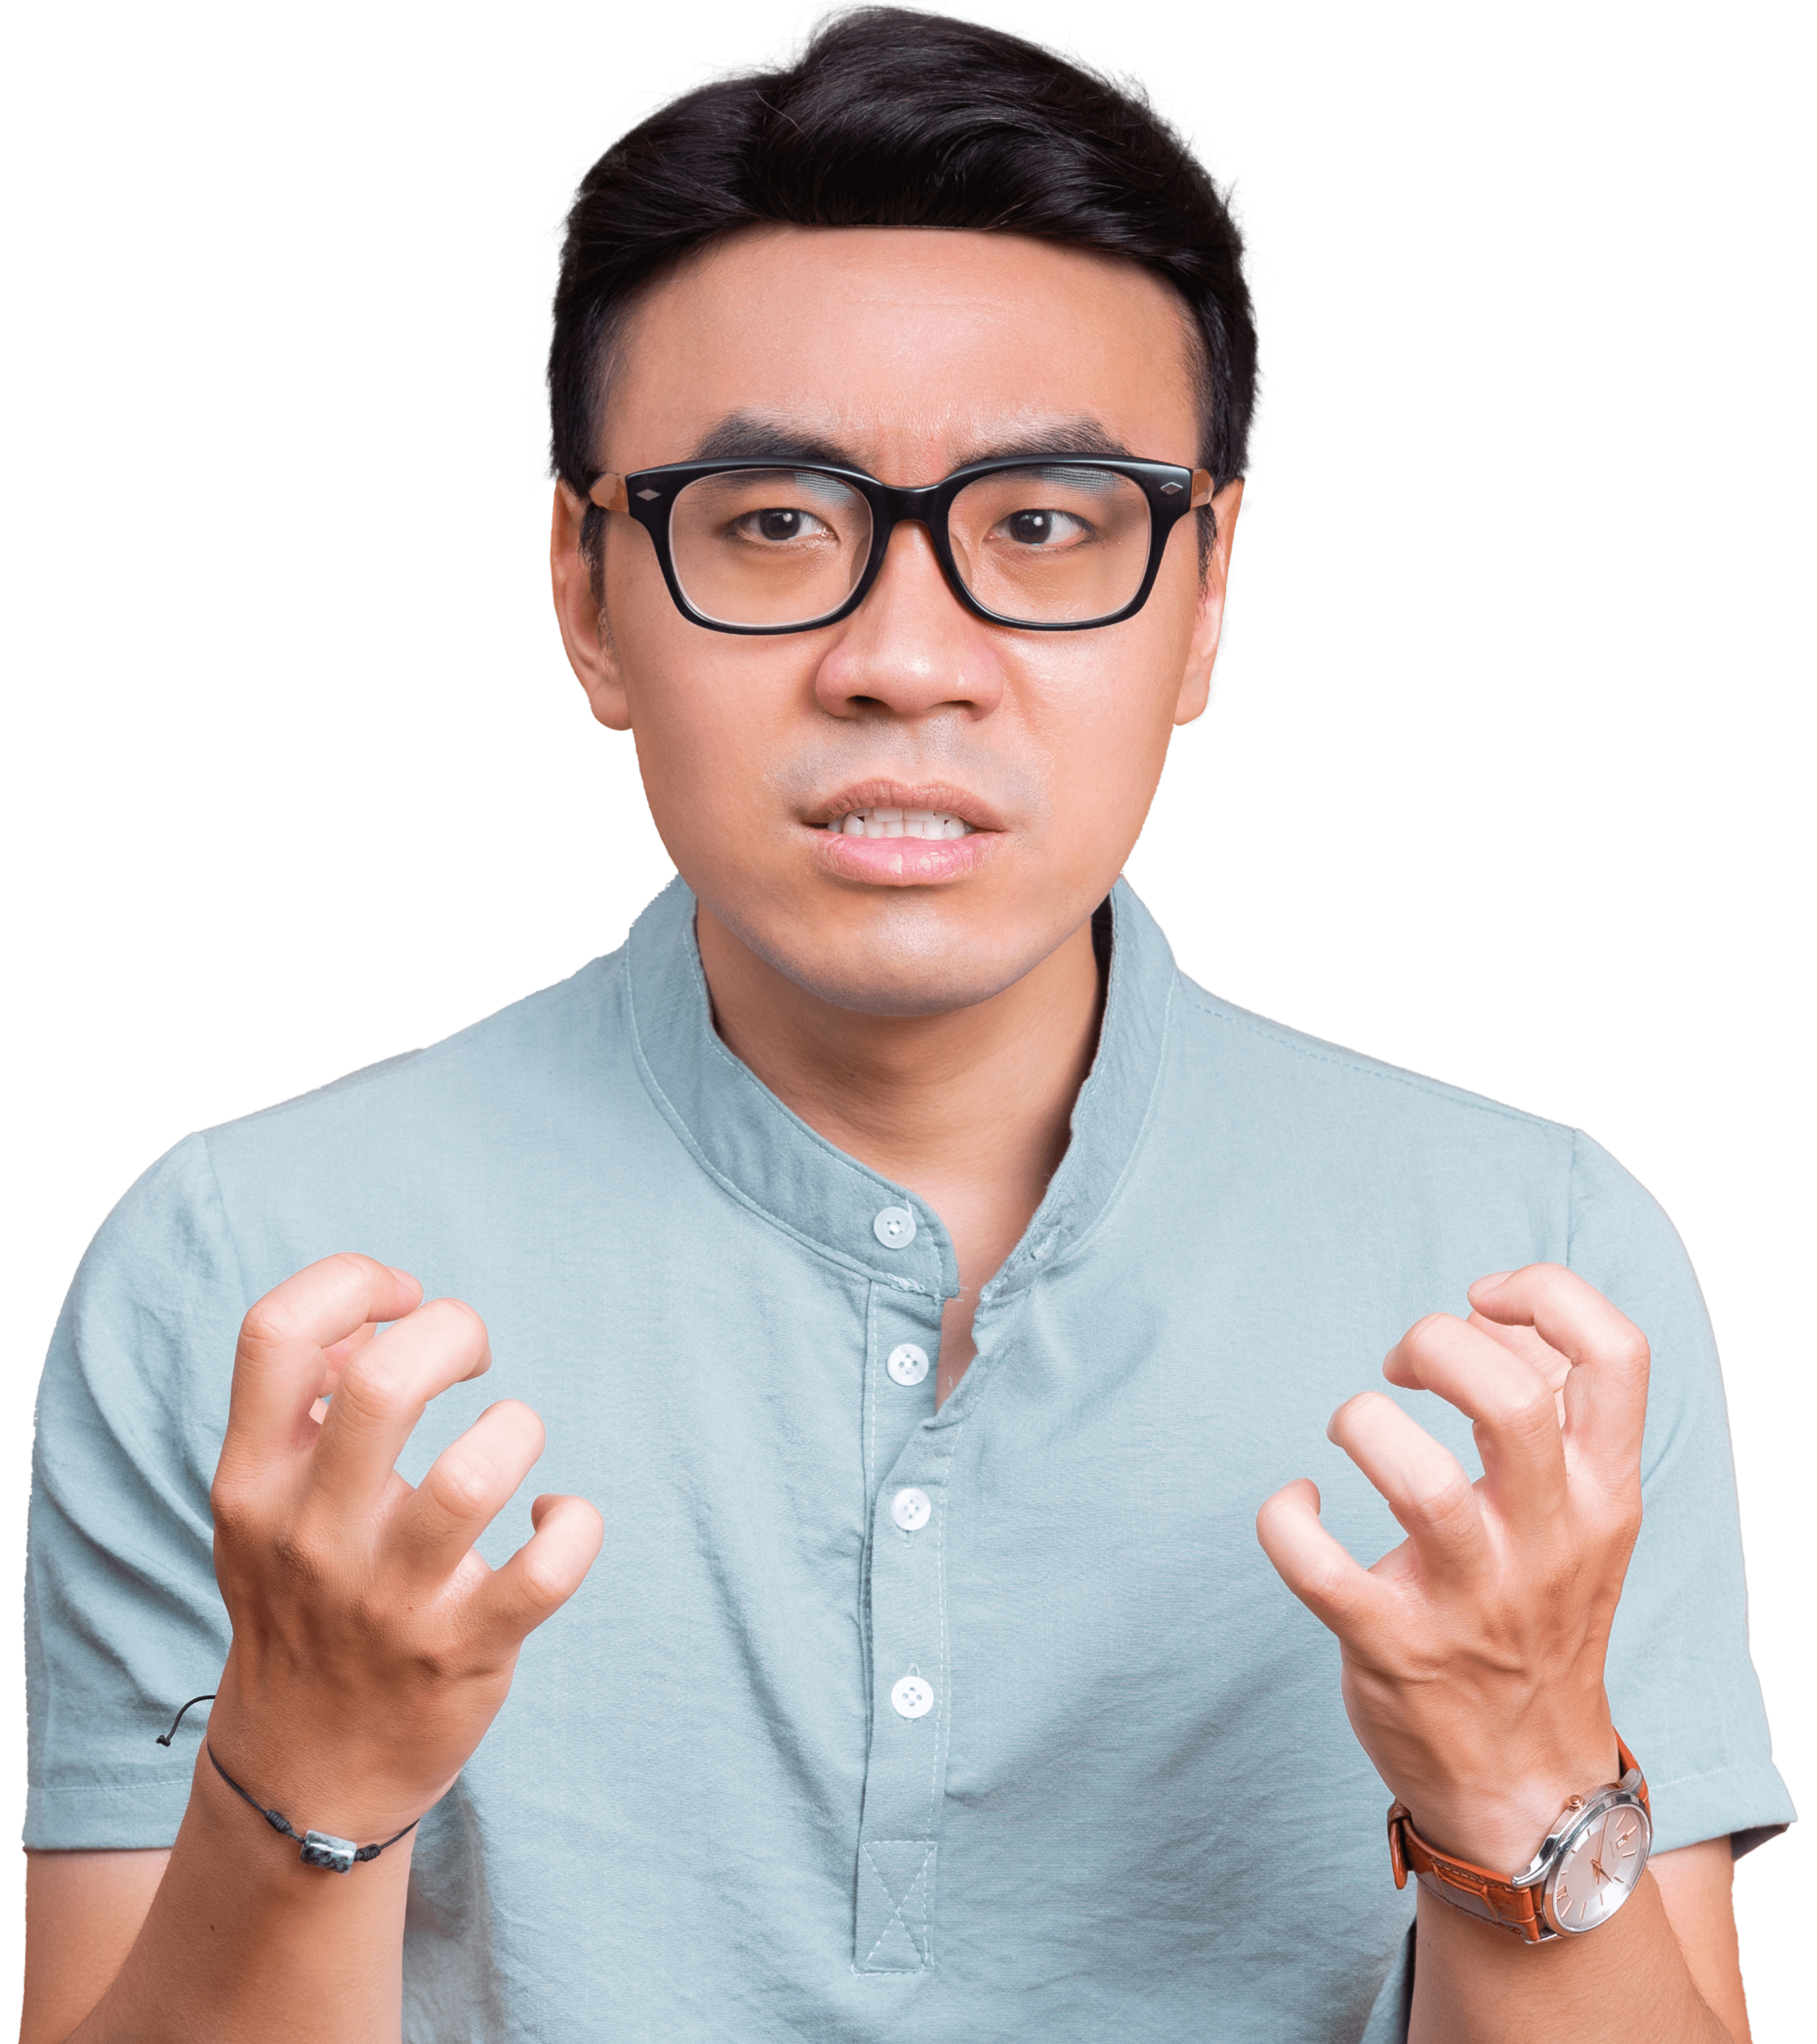 Asiatischer Mann mit Brille, Hemd, schaut verärgert